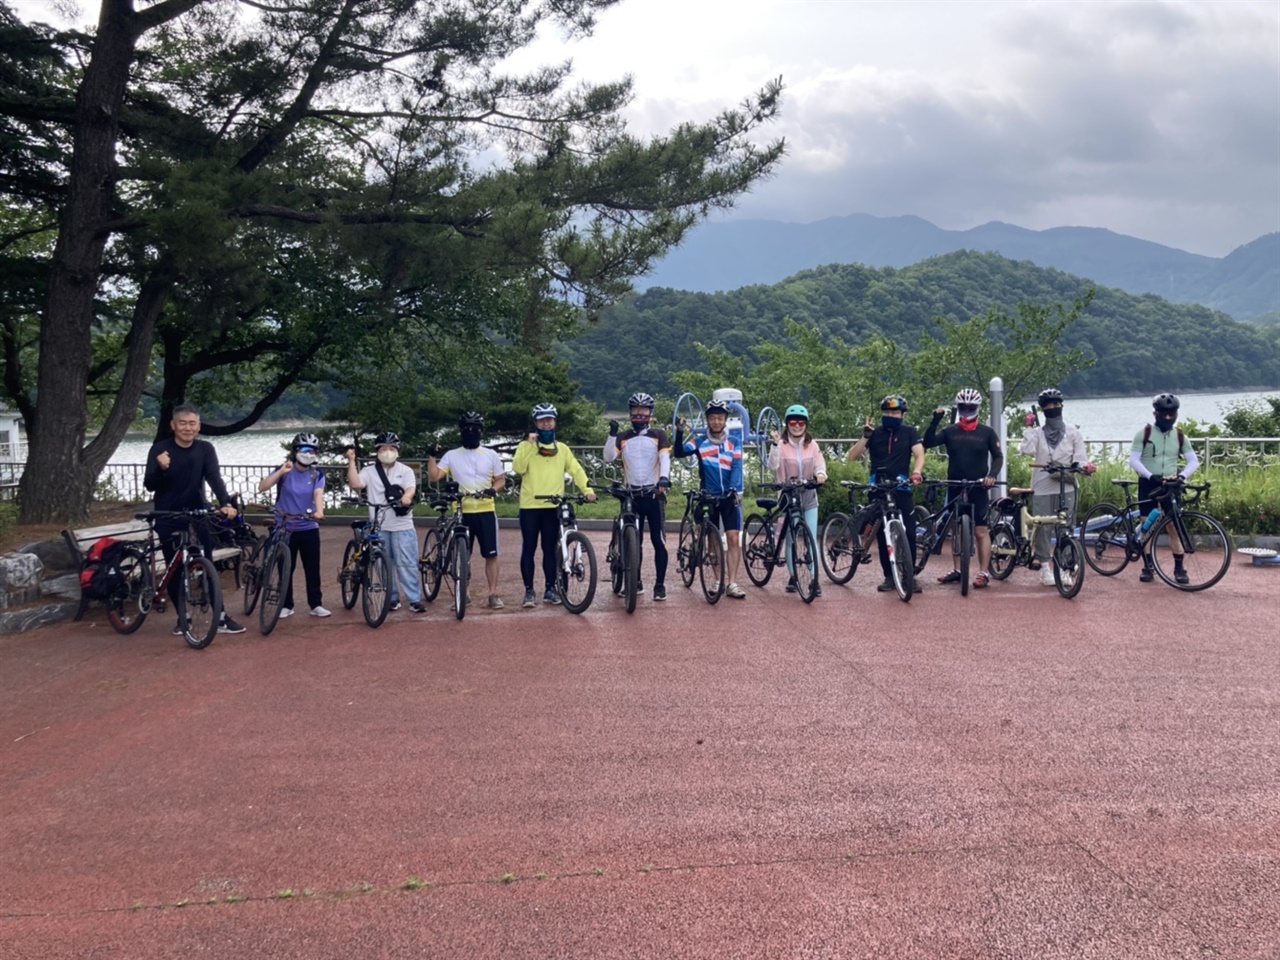 기사속에 등장하는 손주영, 장인수, 박정규, 김삼립씨는 이 소모임 회원으로 함께 자전거를 타기 시작했다.